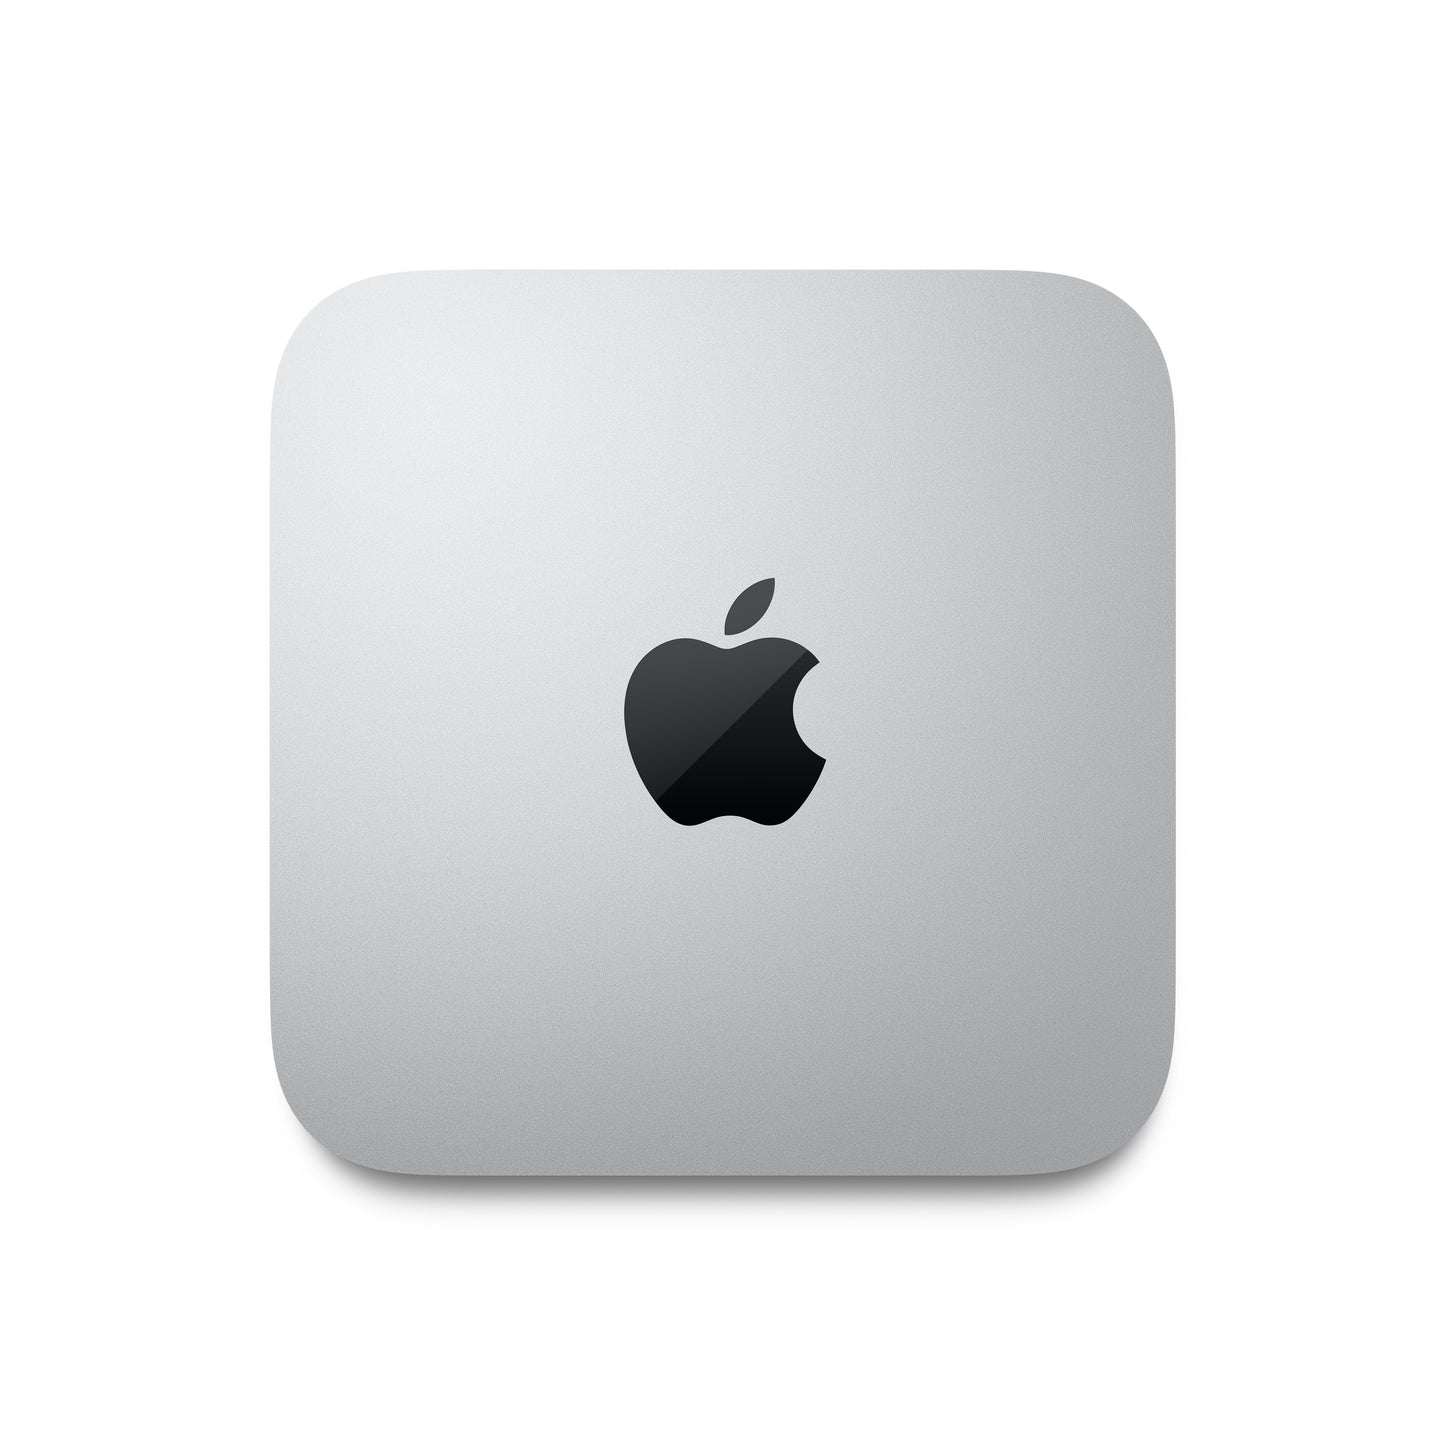 Mac mini M1 Apple M1 chip with 8_core CPU and 8_core GPU, 256GB SSD